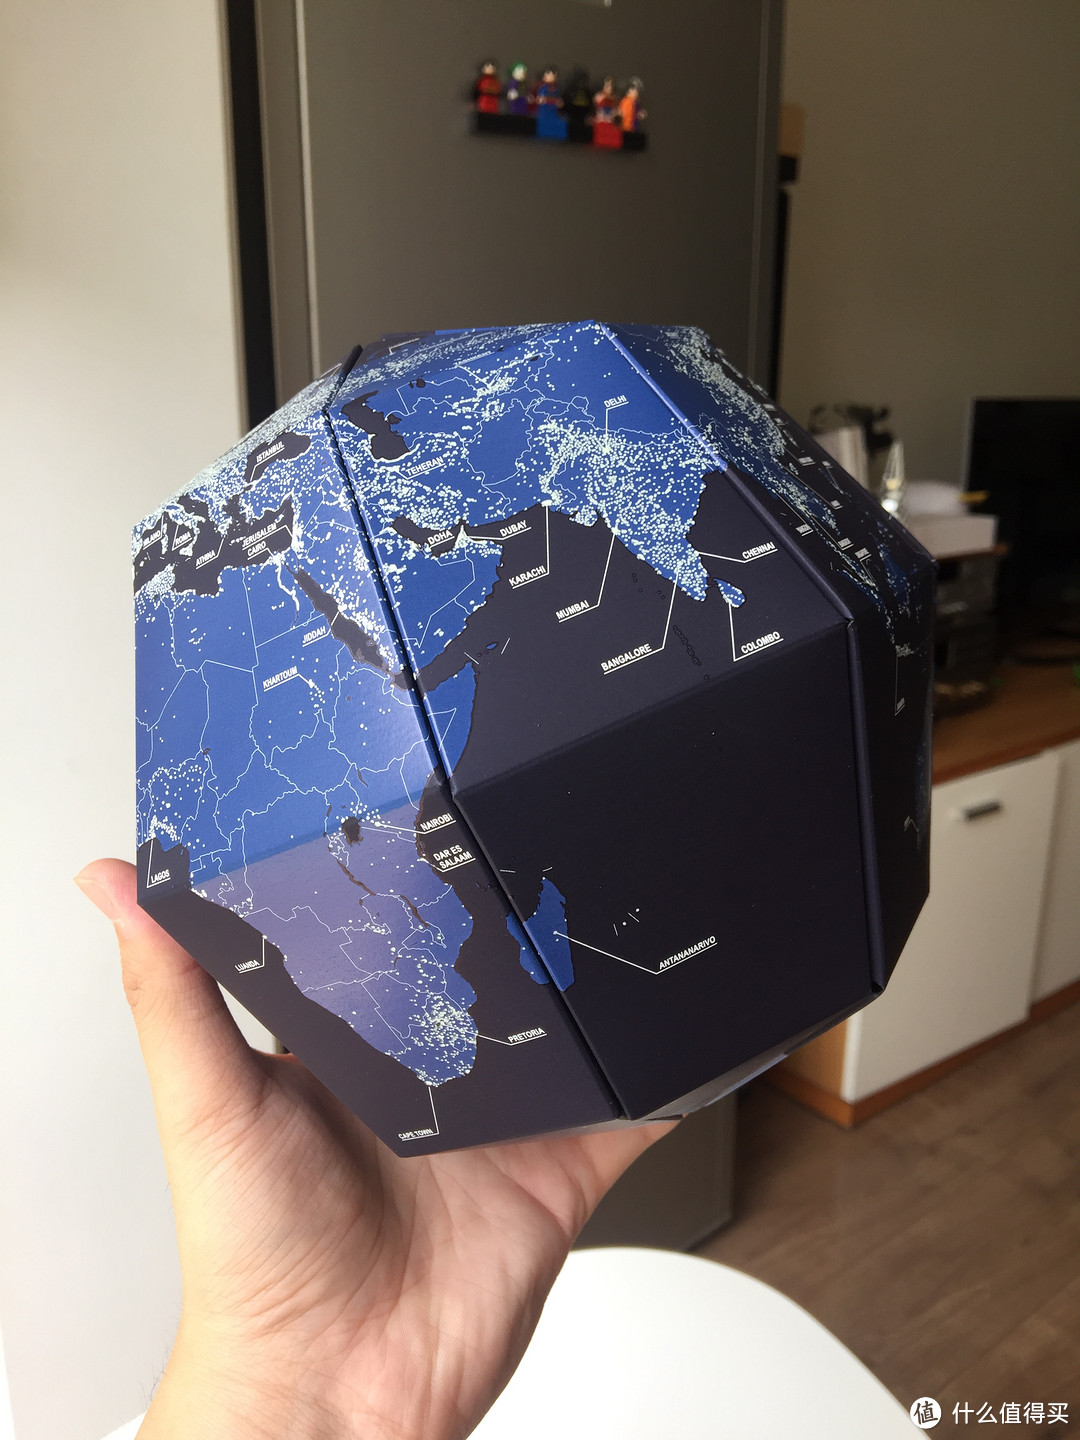 #原创新人# geo-grafia 地球科学馆 地轴23.4度 夜光组装式 地球仪 拼装全记录 开箱